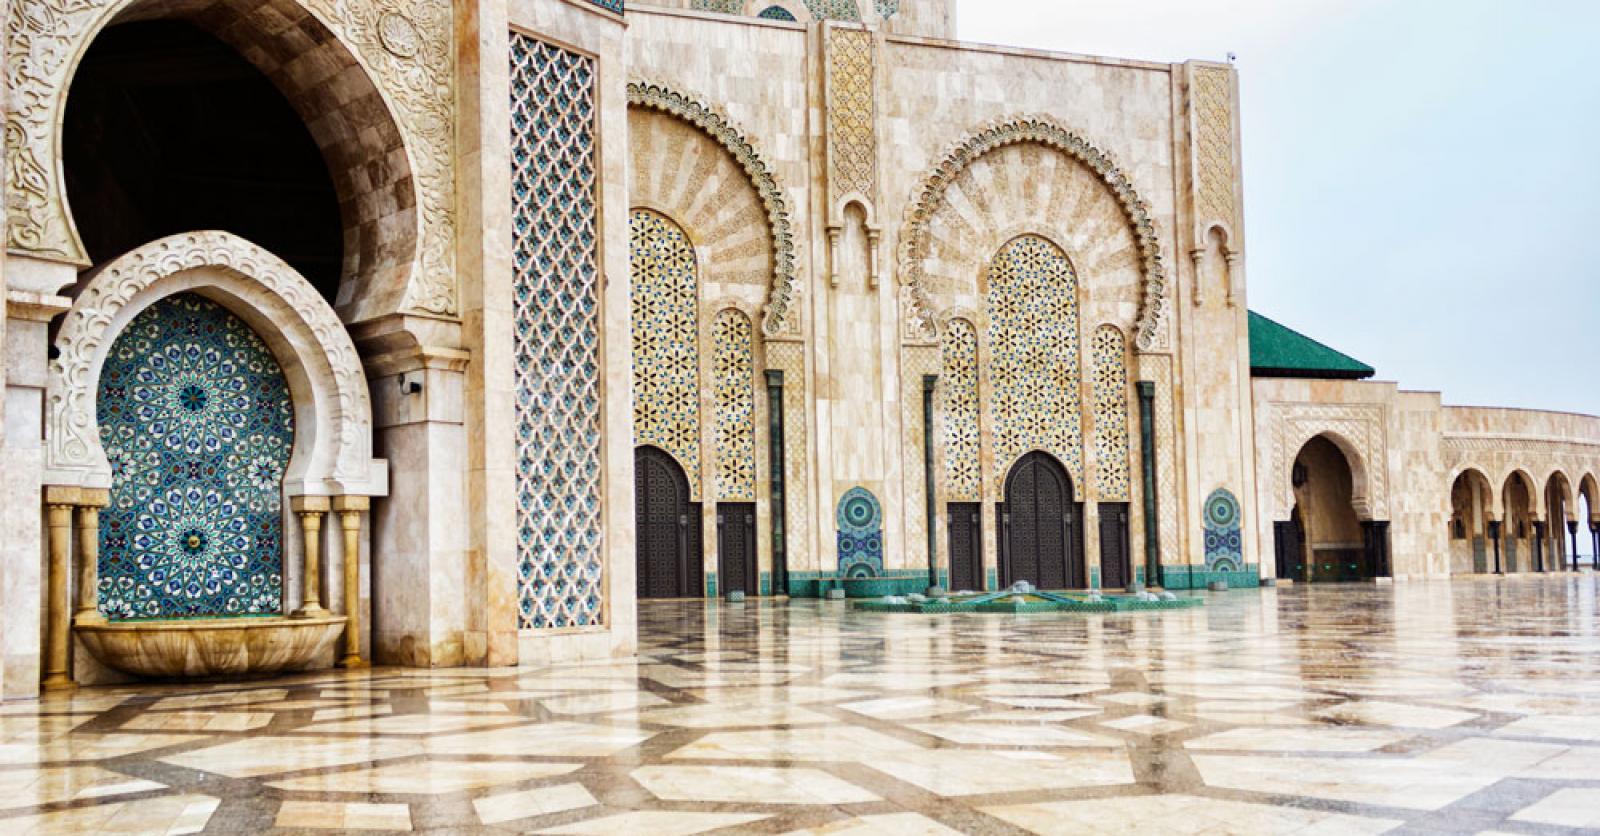 19 fotos waardoor je nú op het vliegtuig naar Marokko wil springen foto